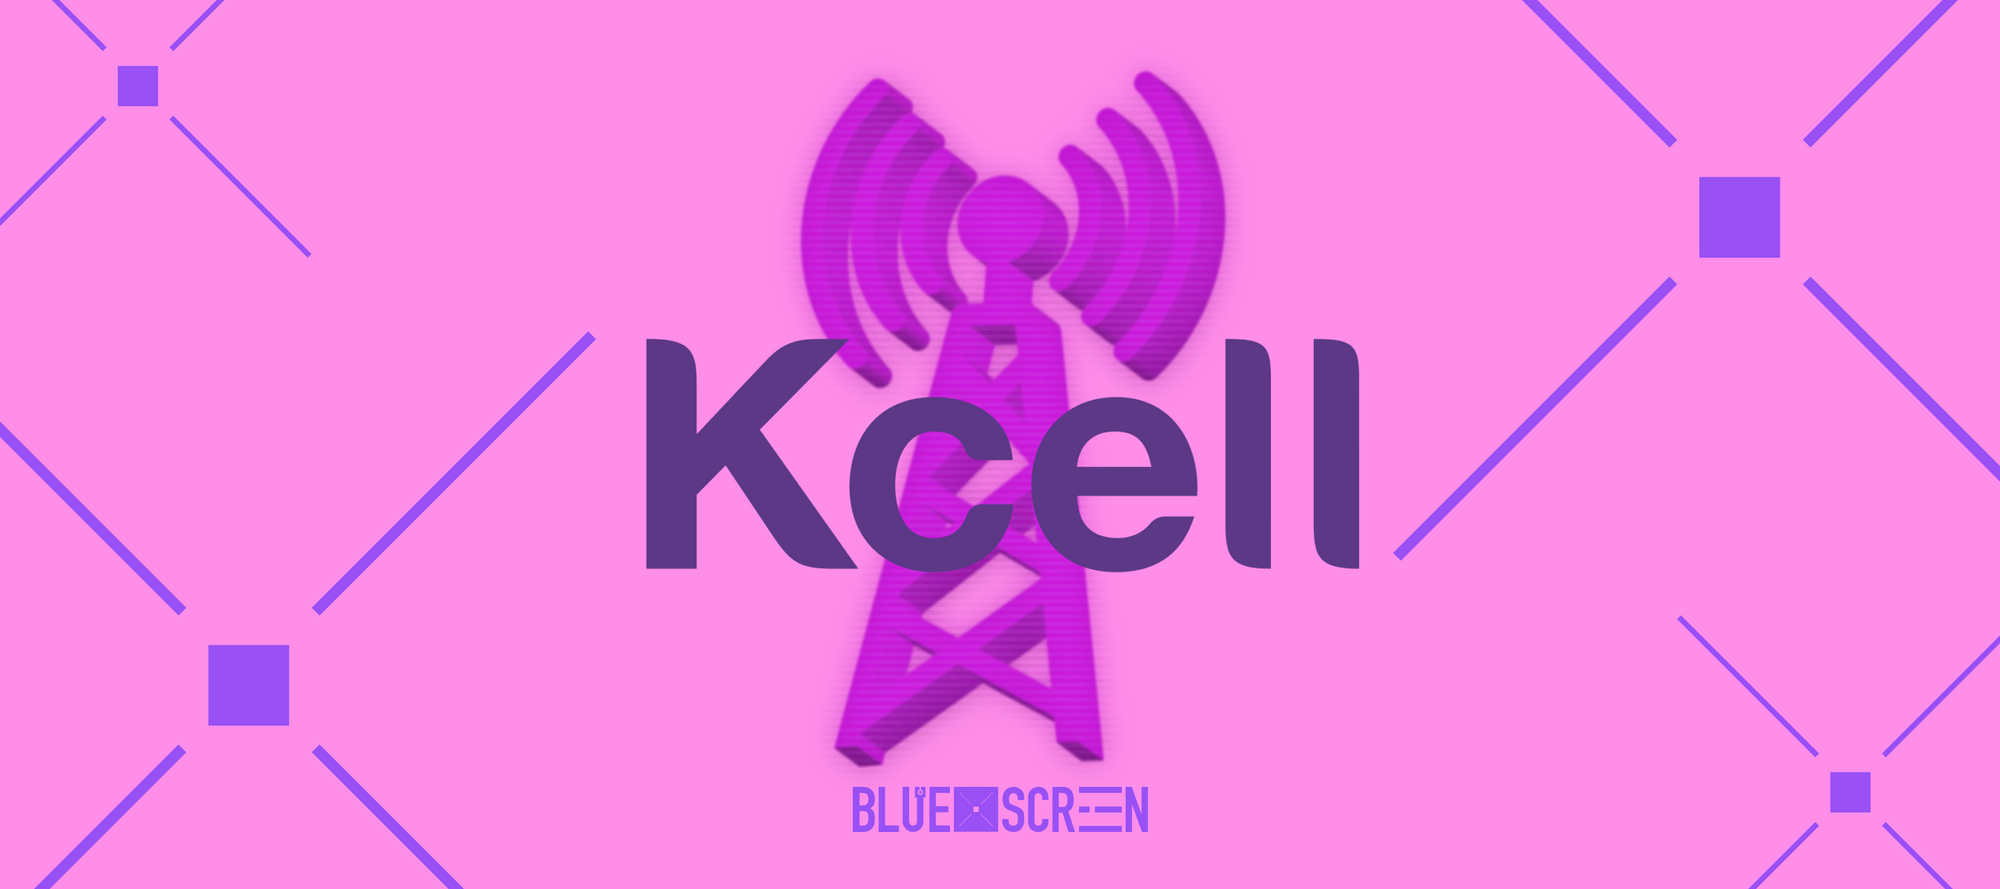 Kcell улучшает качество интернета в проблемных местах за счет новых антенн